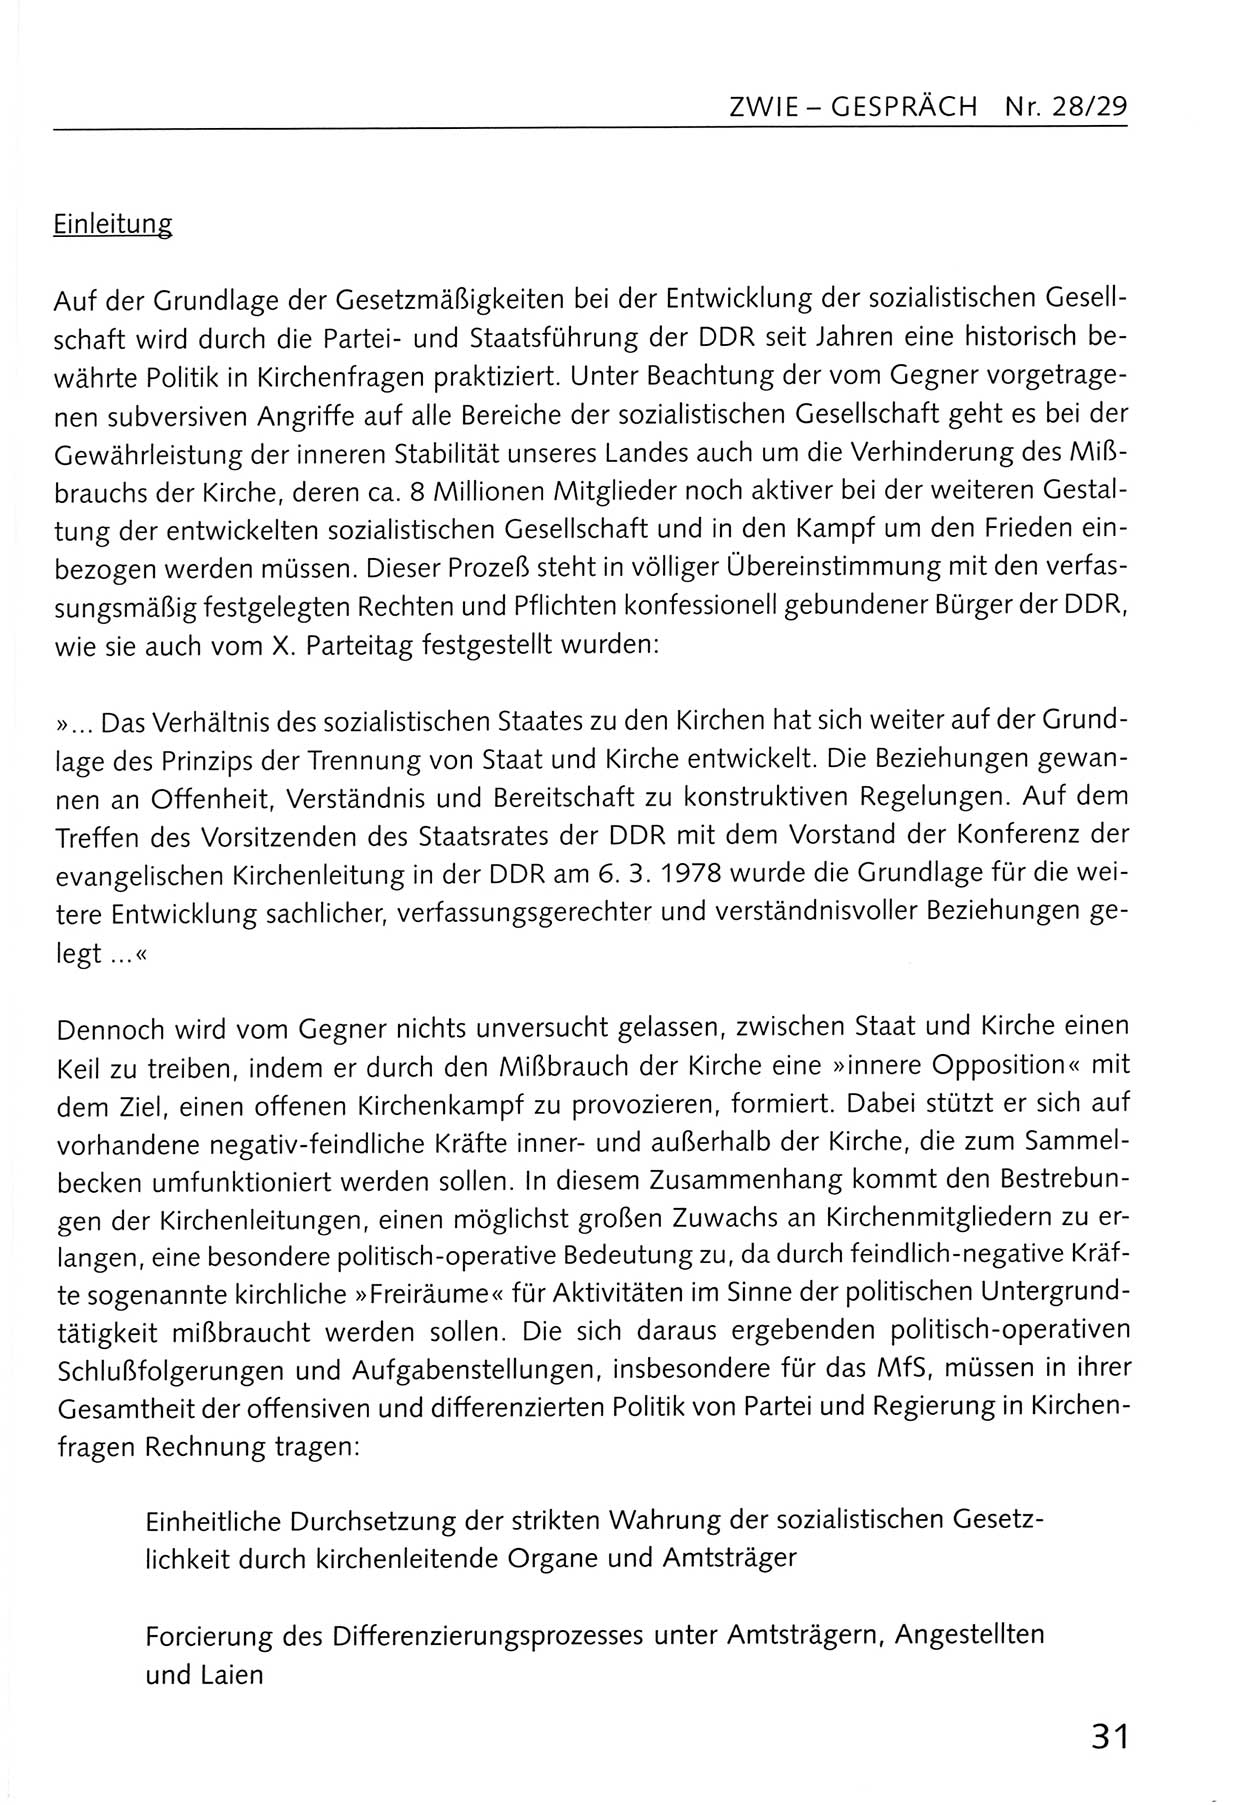 Zwie-Gespräch, Beiträge zum Umgang mit der Staatssicherheits-Vergangenheit [Deutsche Demokratische Republik (DDR)], Ausgabe Nr. 28/29, Berlin 1995, Seite 31 (Zwie-Gespr. Ausg. 28/29 1995, S. 31)